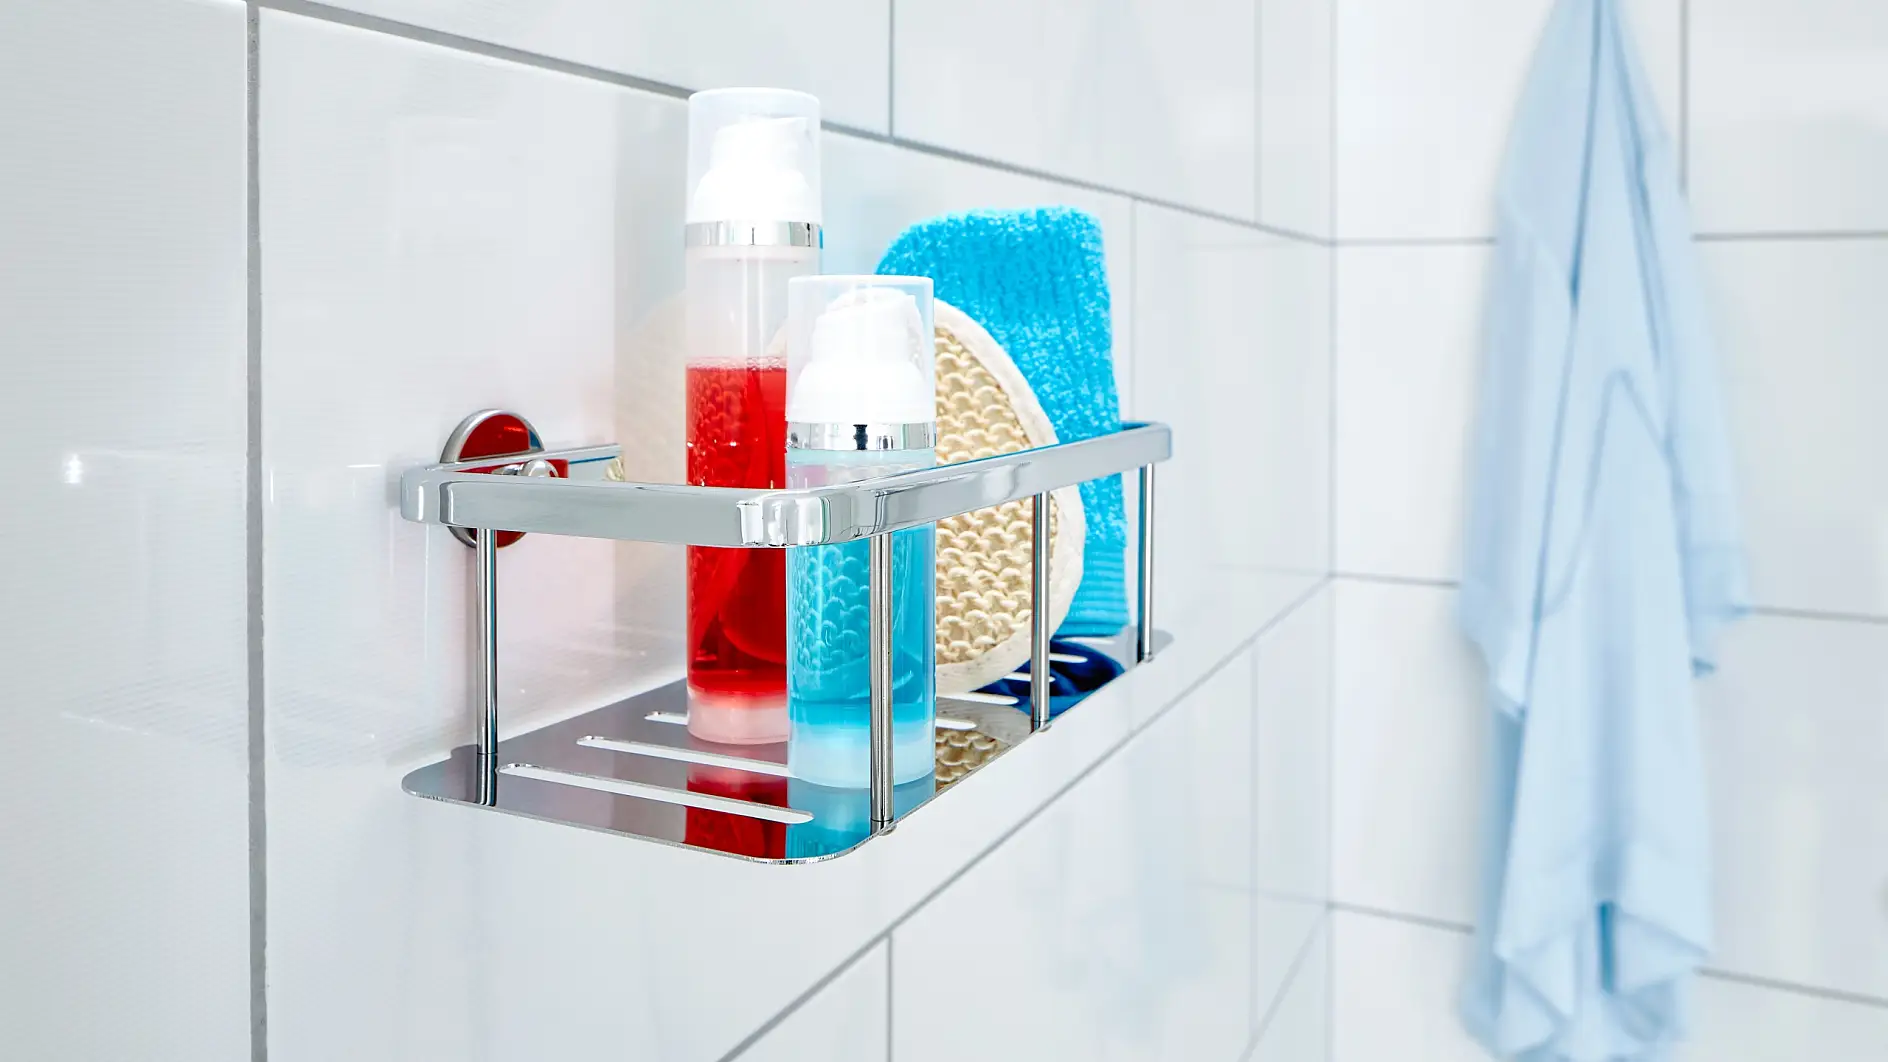 Gardez vos produits de douche à portée de main, mais à l’abri des gouttes.